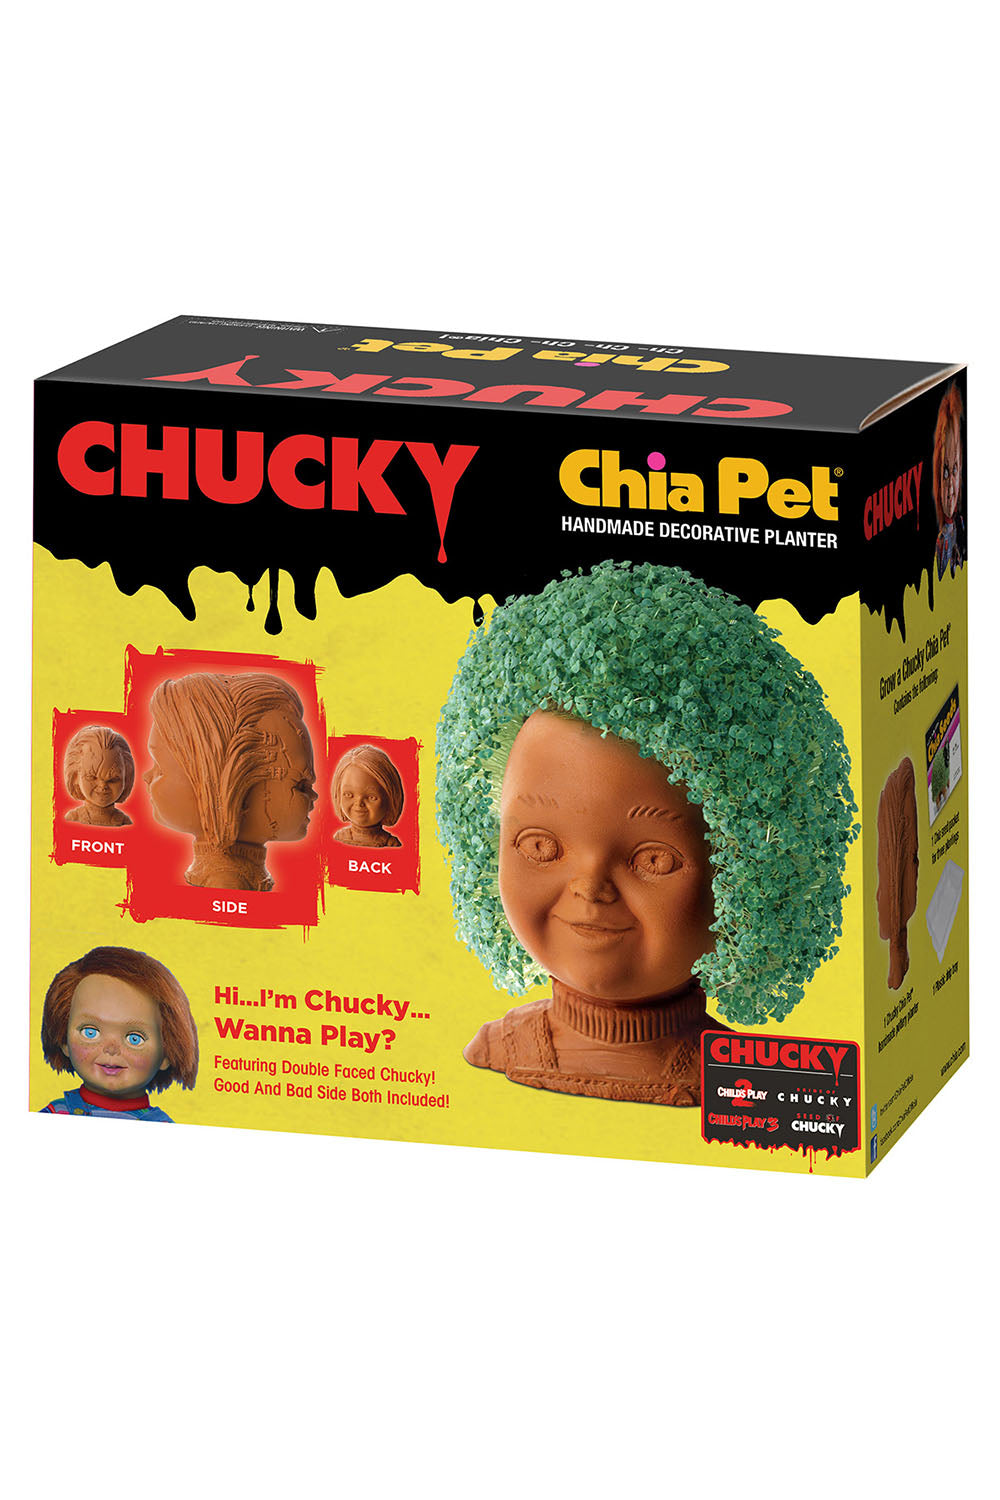 Chucky Chia Pet Planter